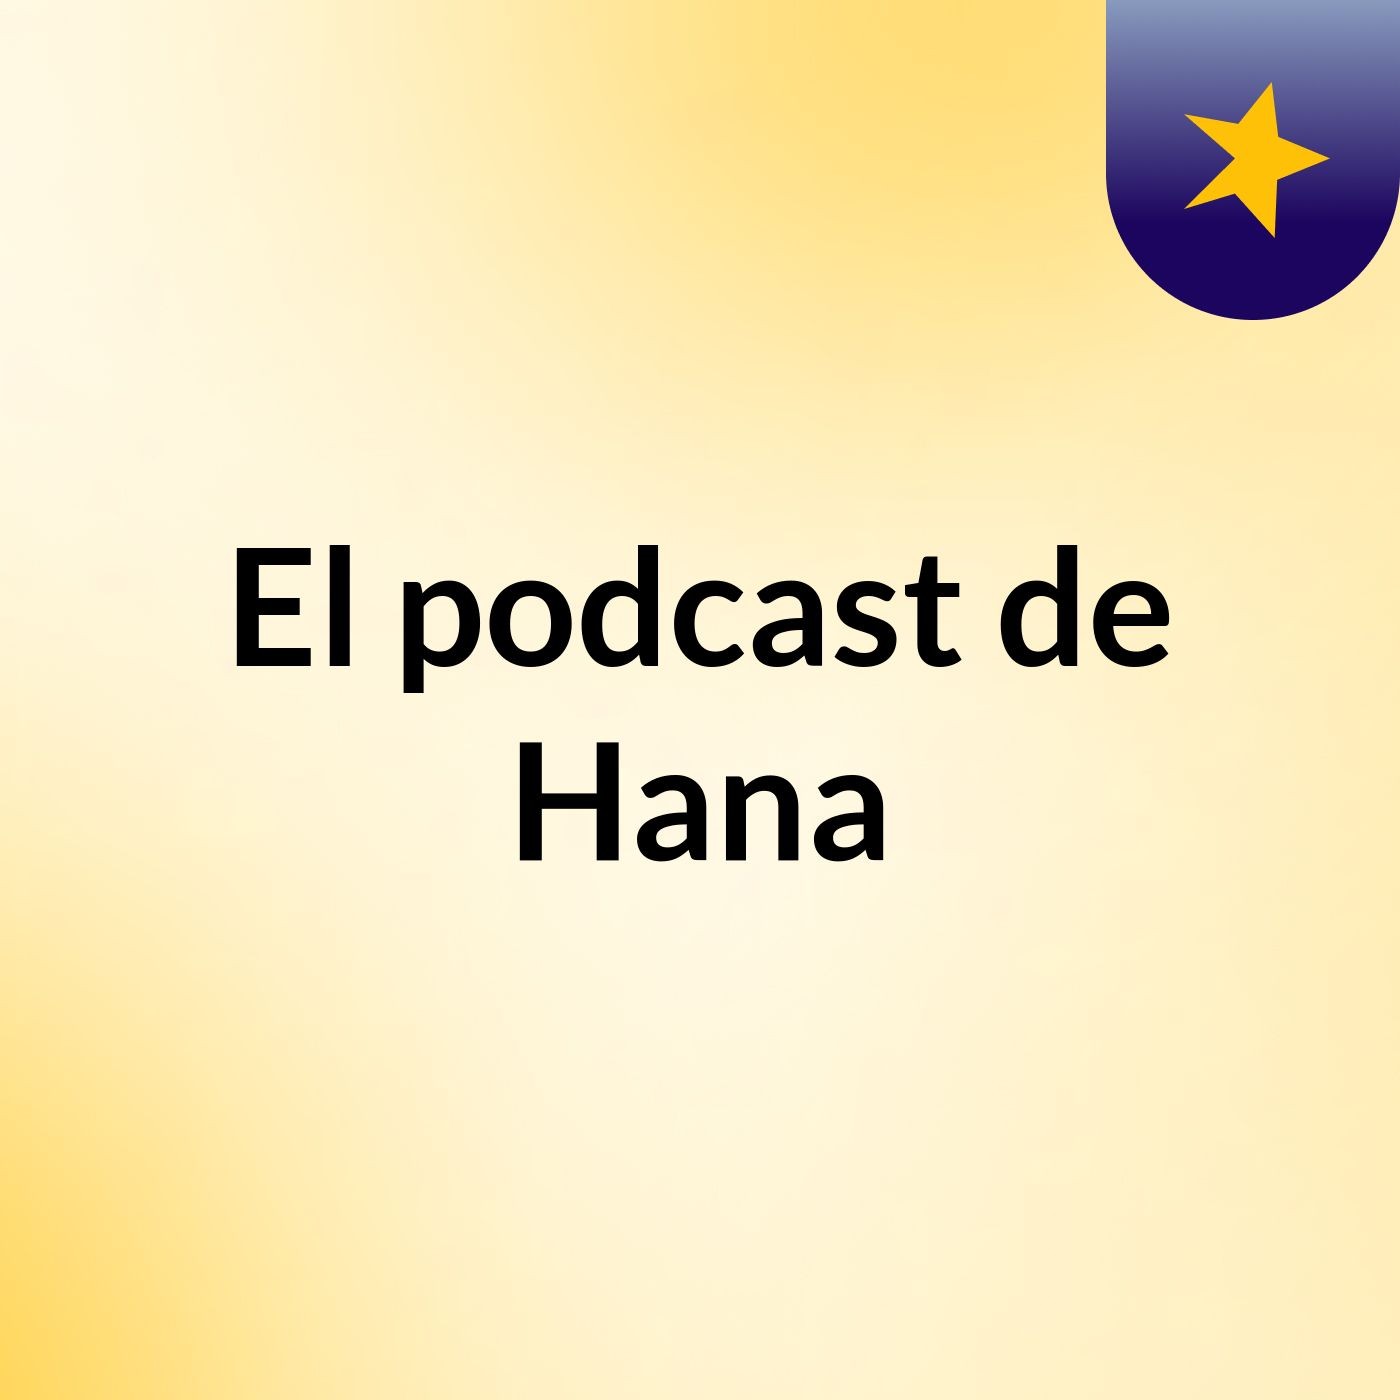 El podcast de Hana